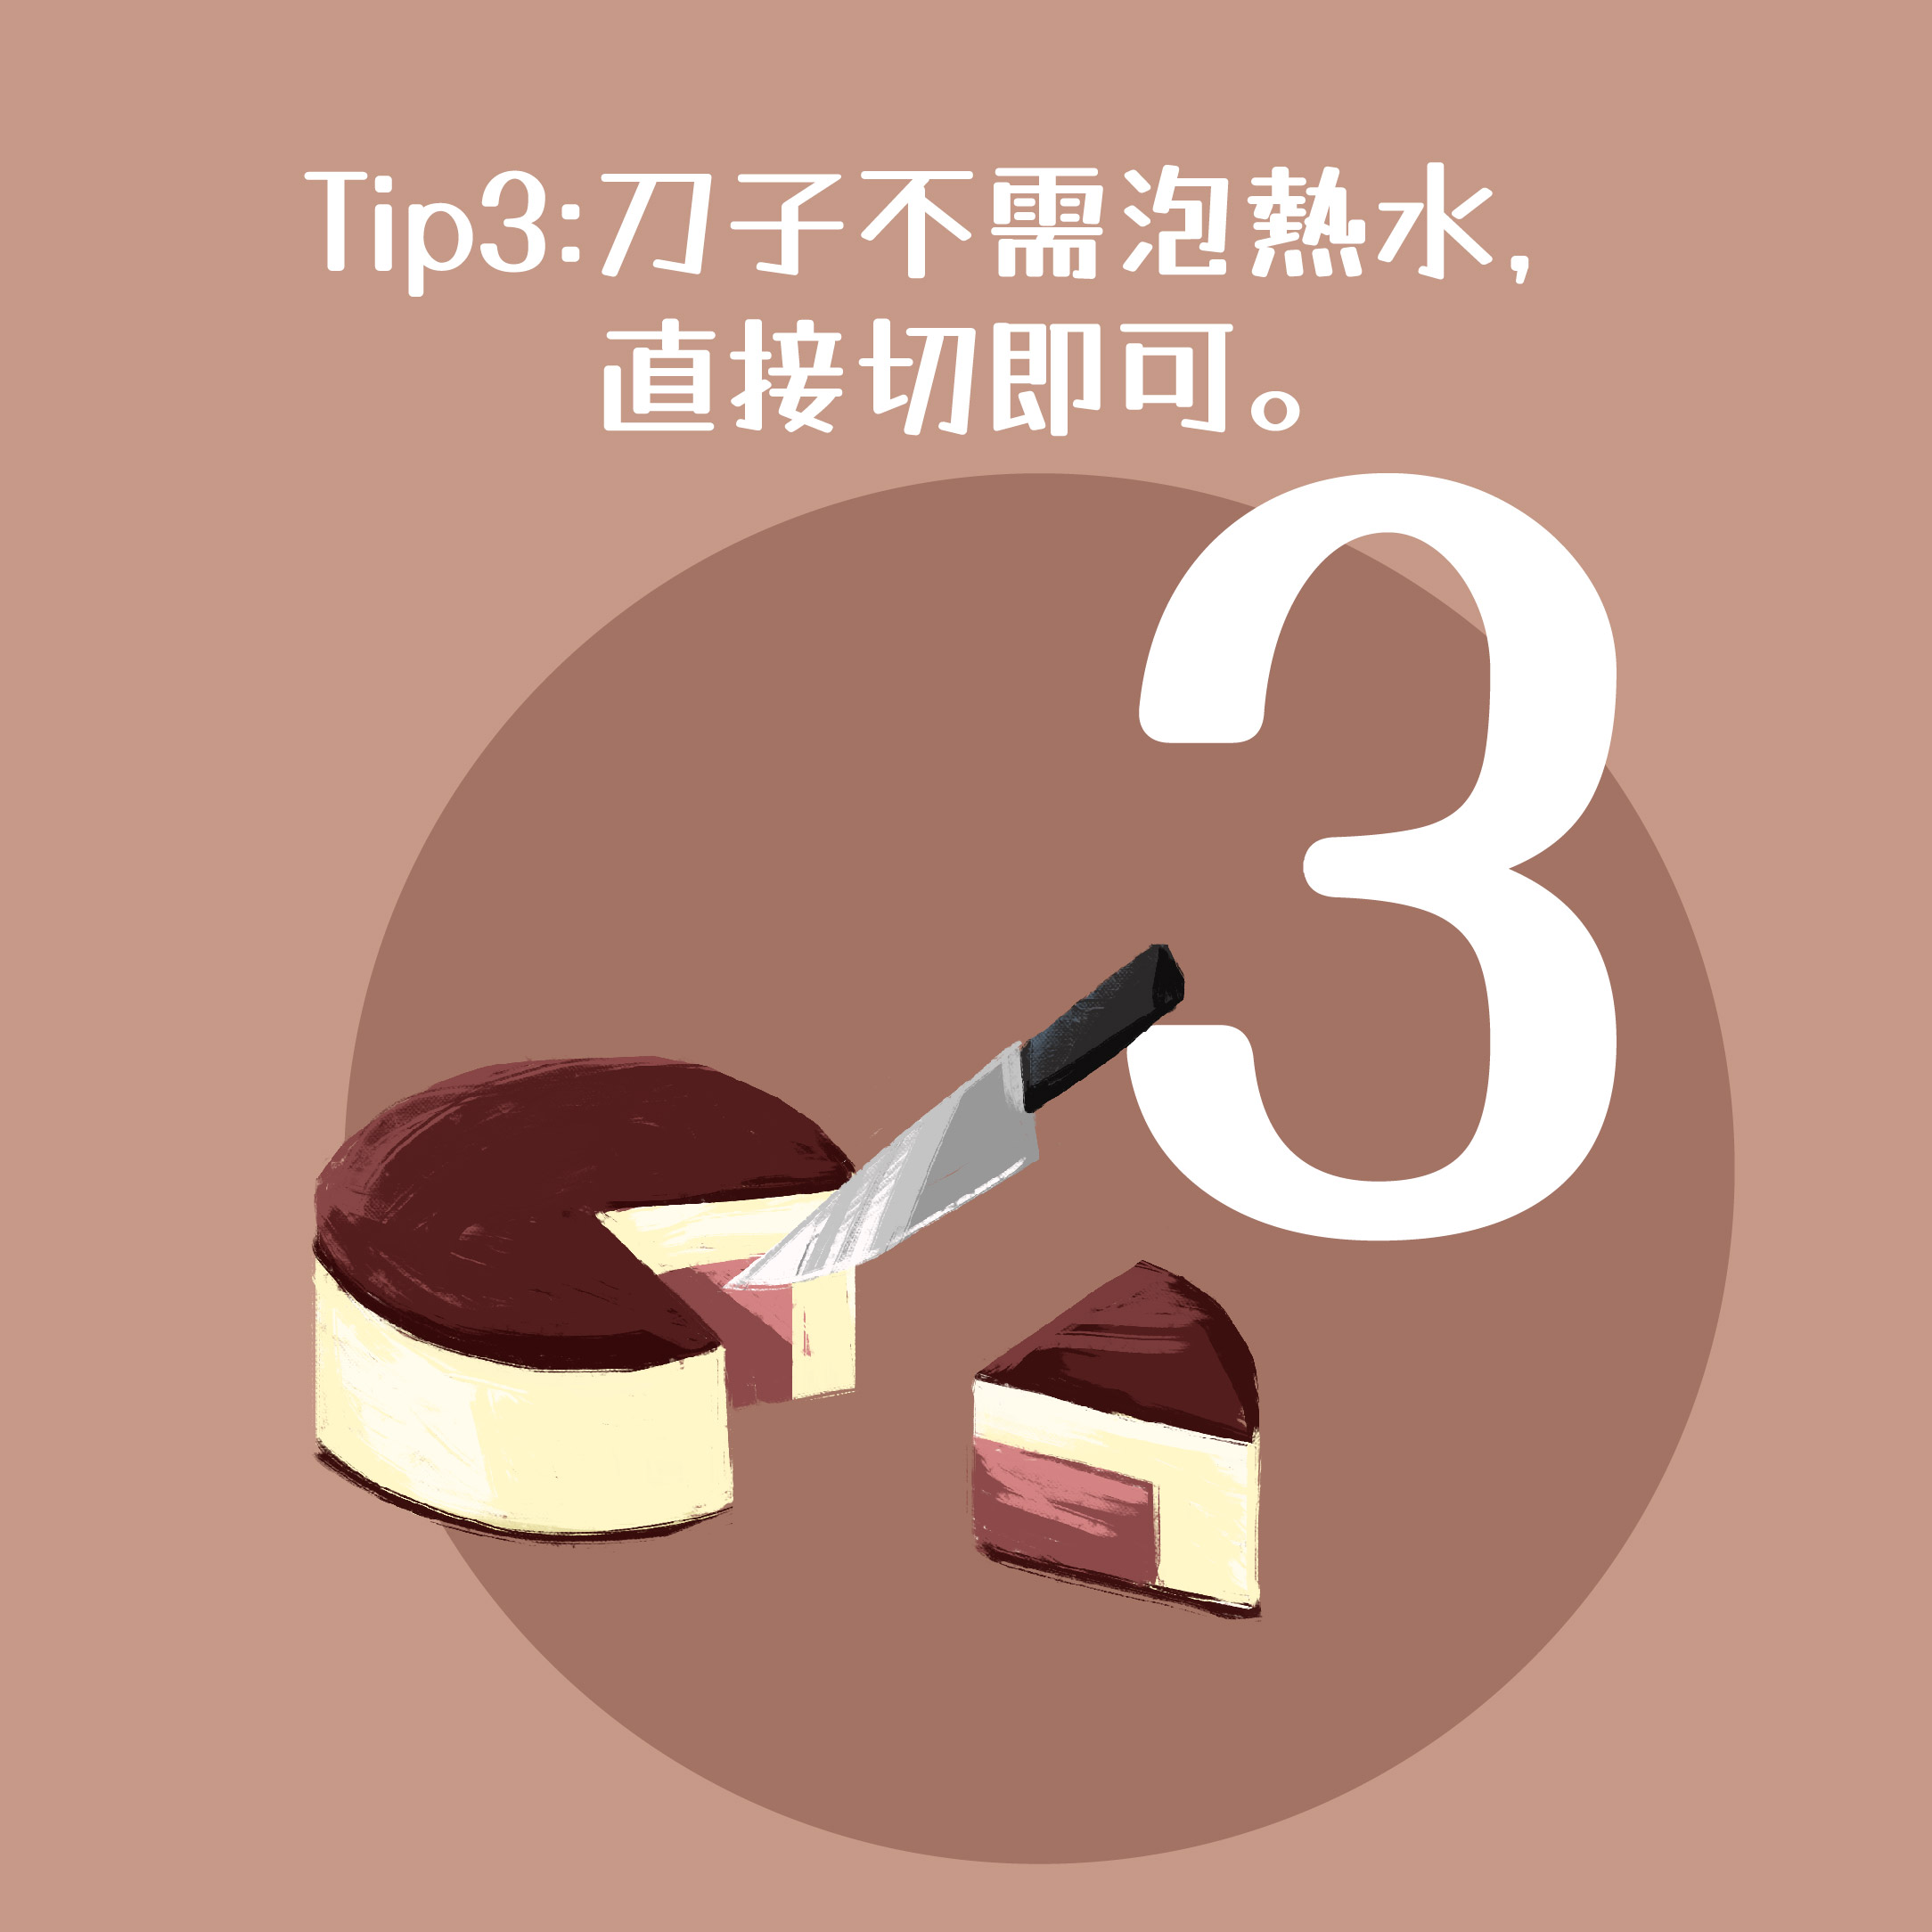 04_切蛋糕方法_2巧克力_Tip3.jpg